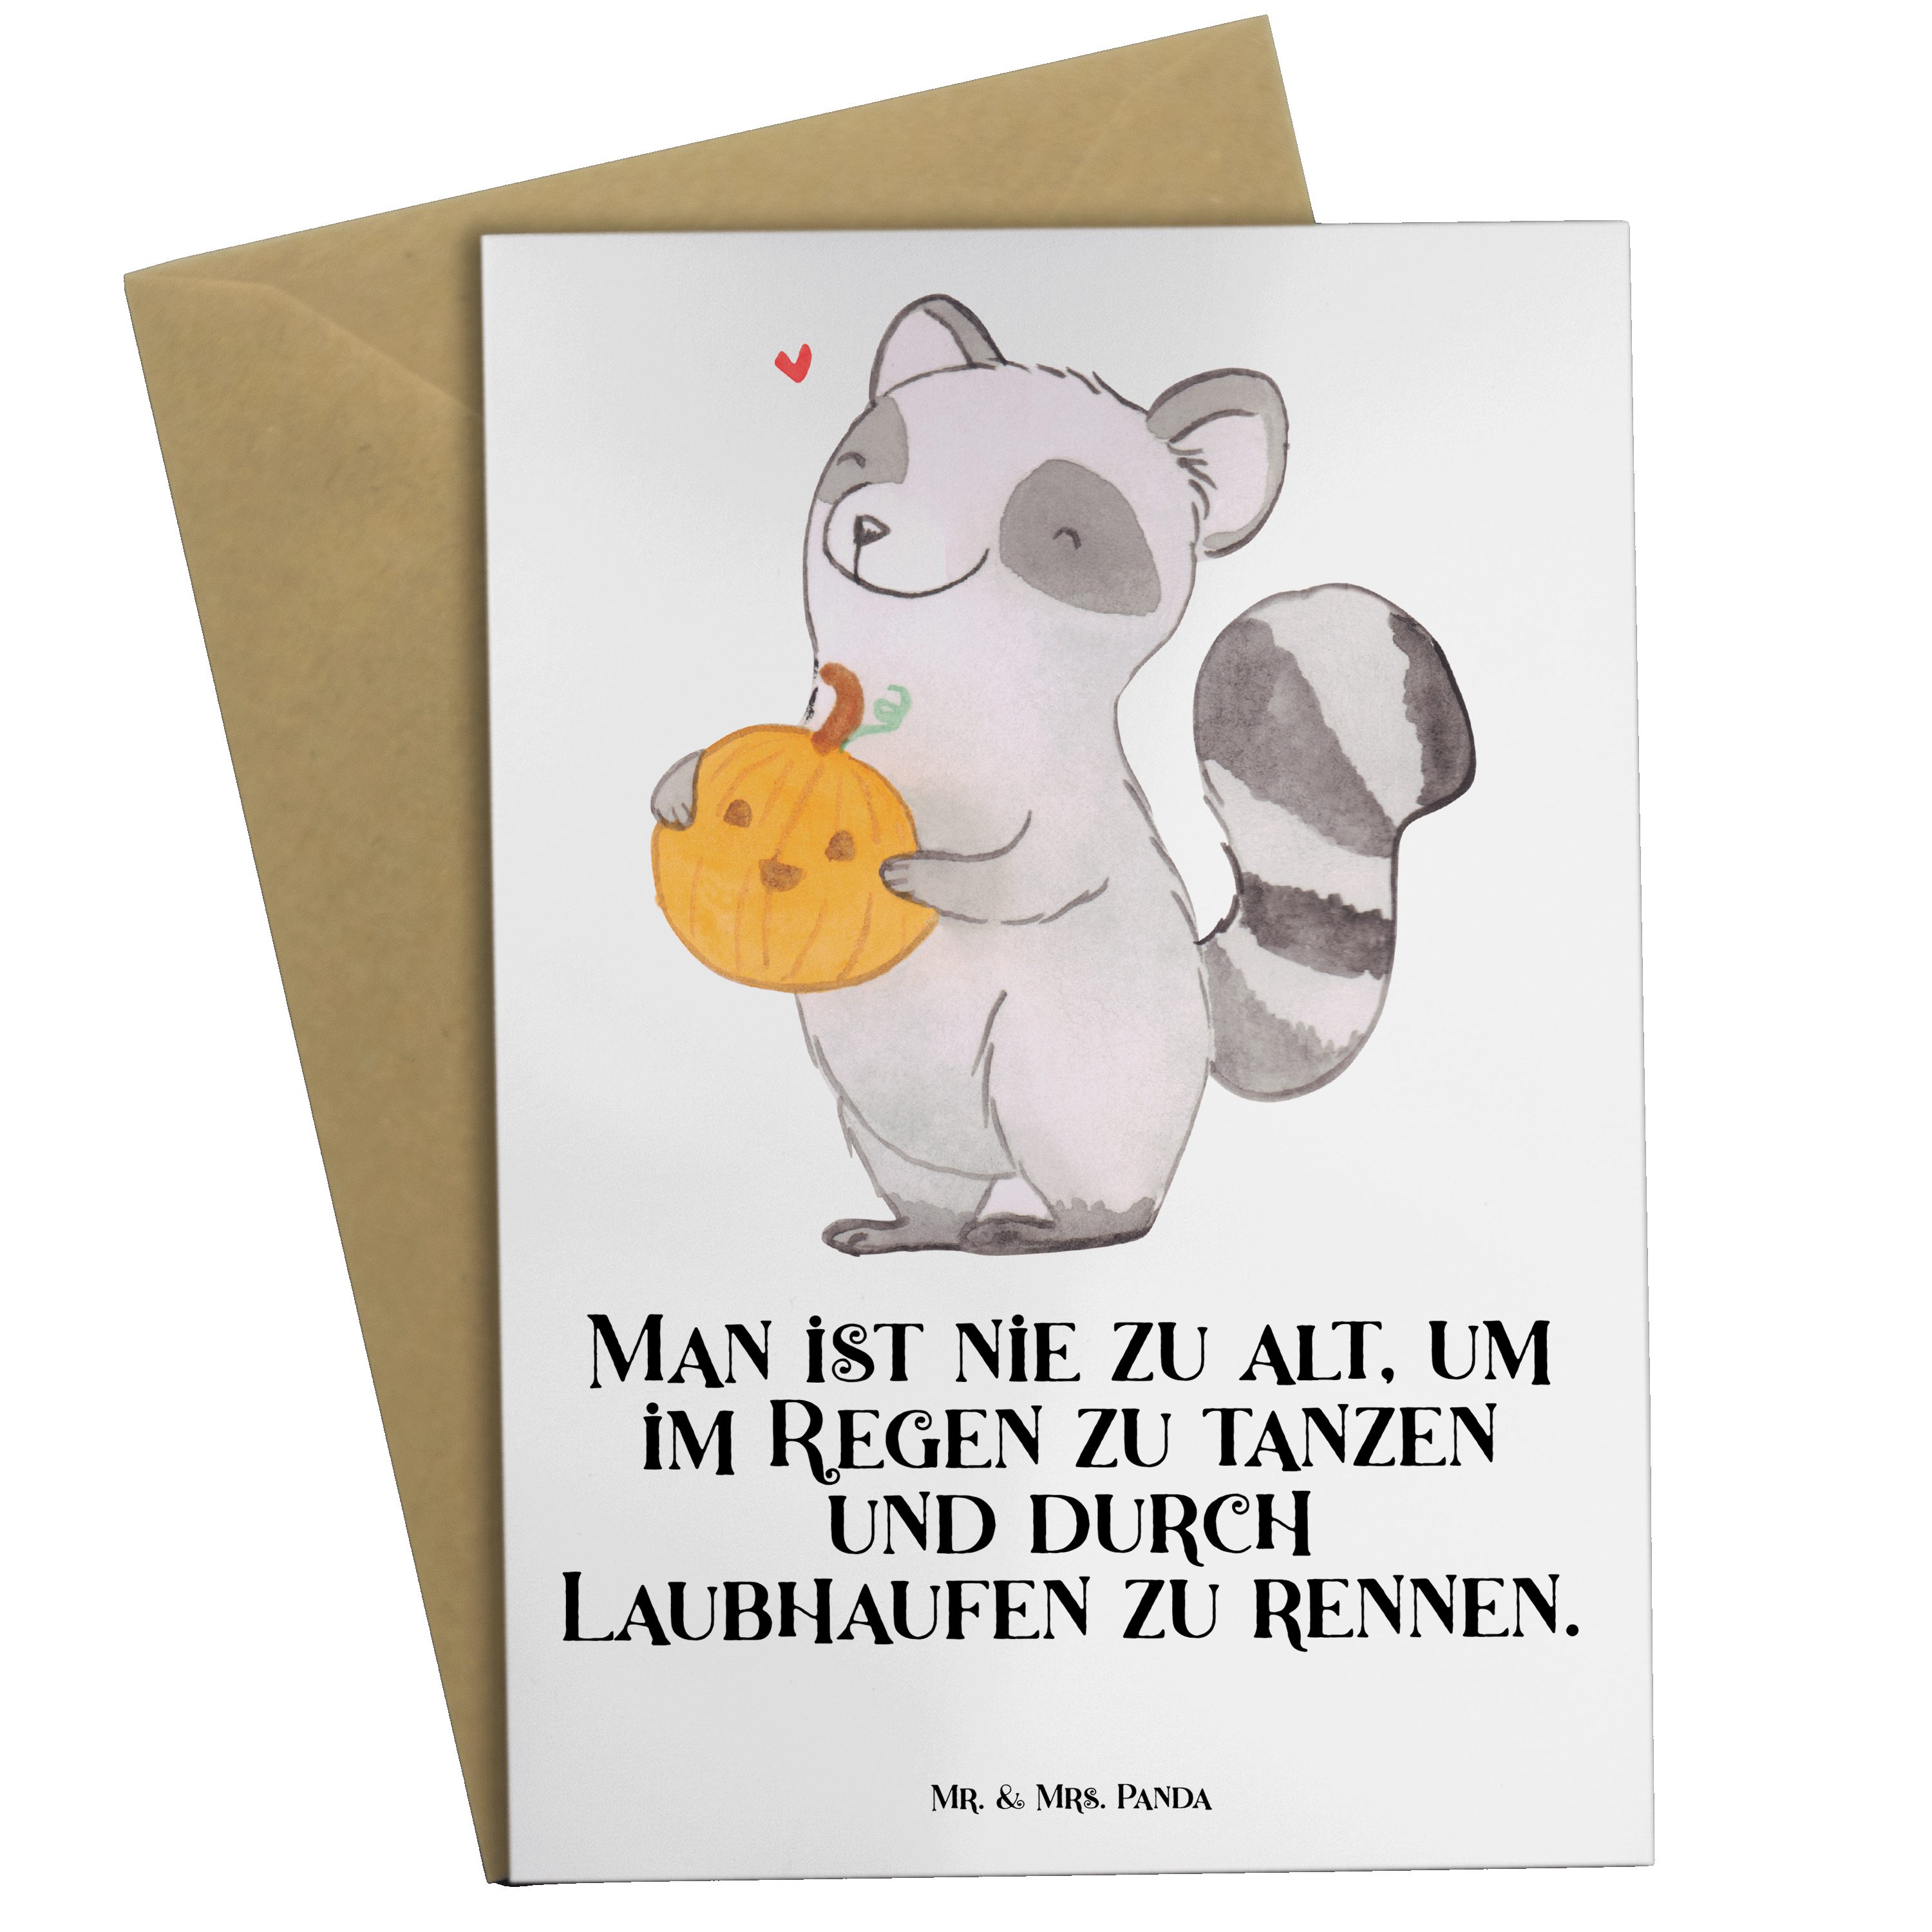 Mr. & Mrs. Panda Grußkarte Waschbär Kürbis - Weiß - Geschenk, Hochzeitskarte, Süßes sonst gibt's, Hochglänzende Veredelung